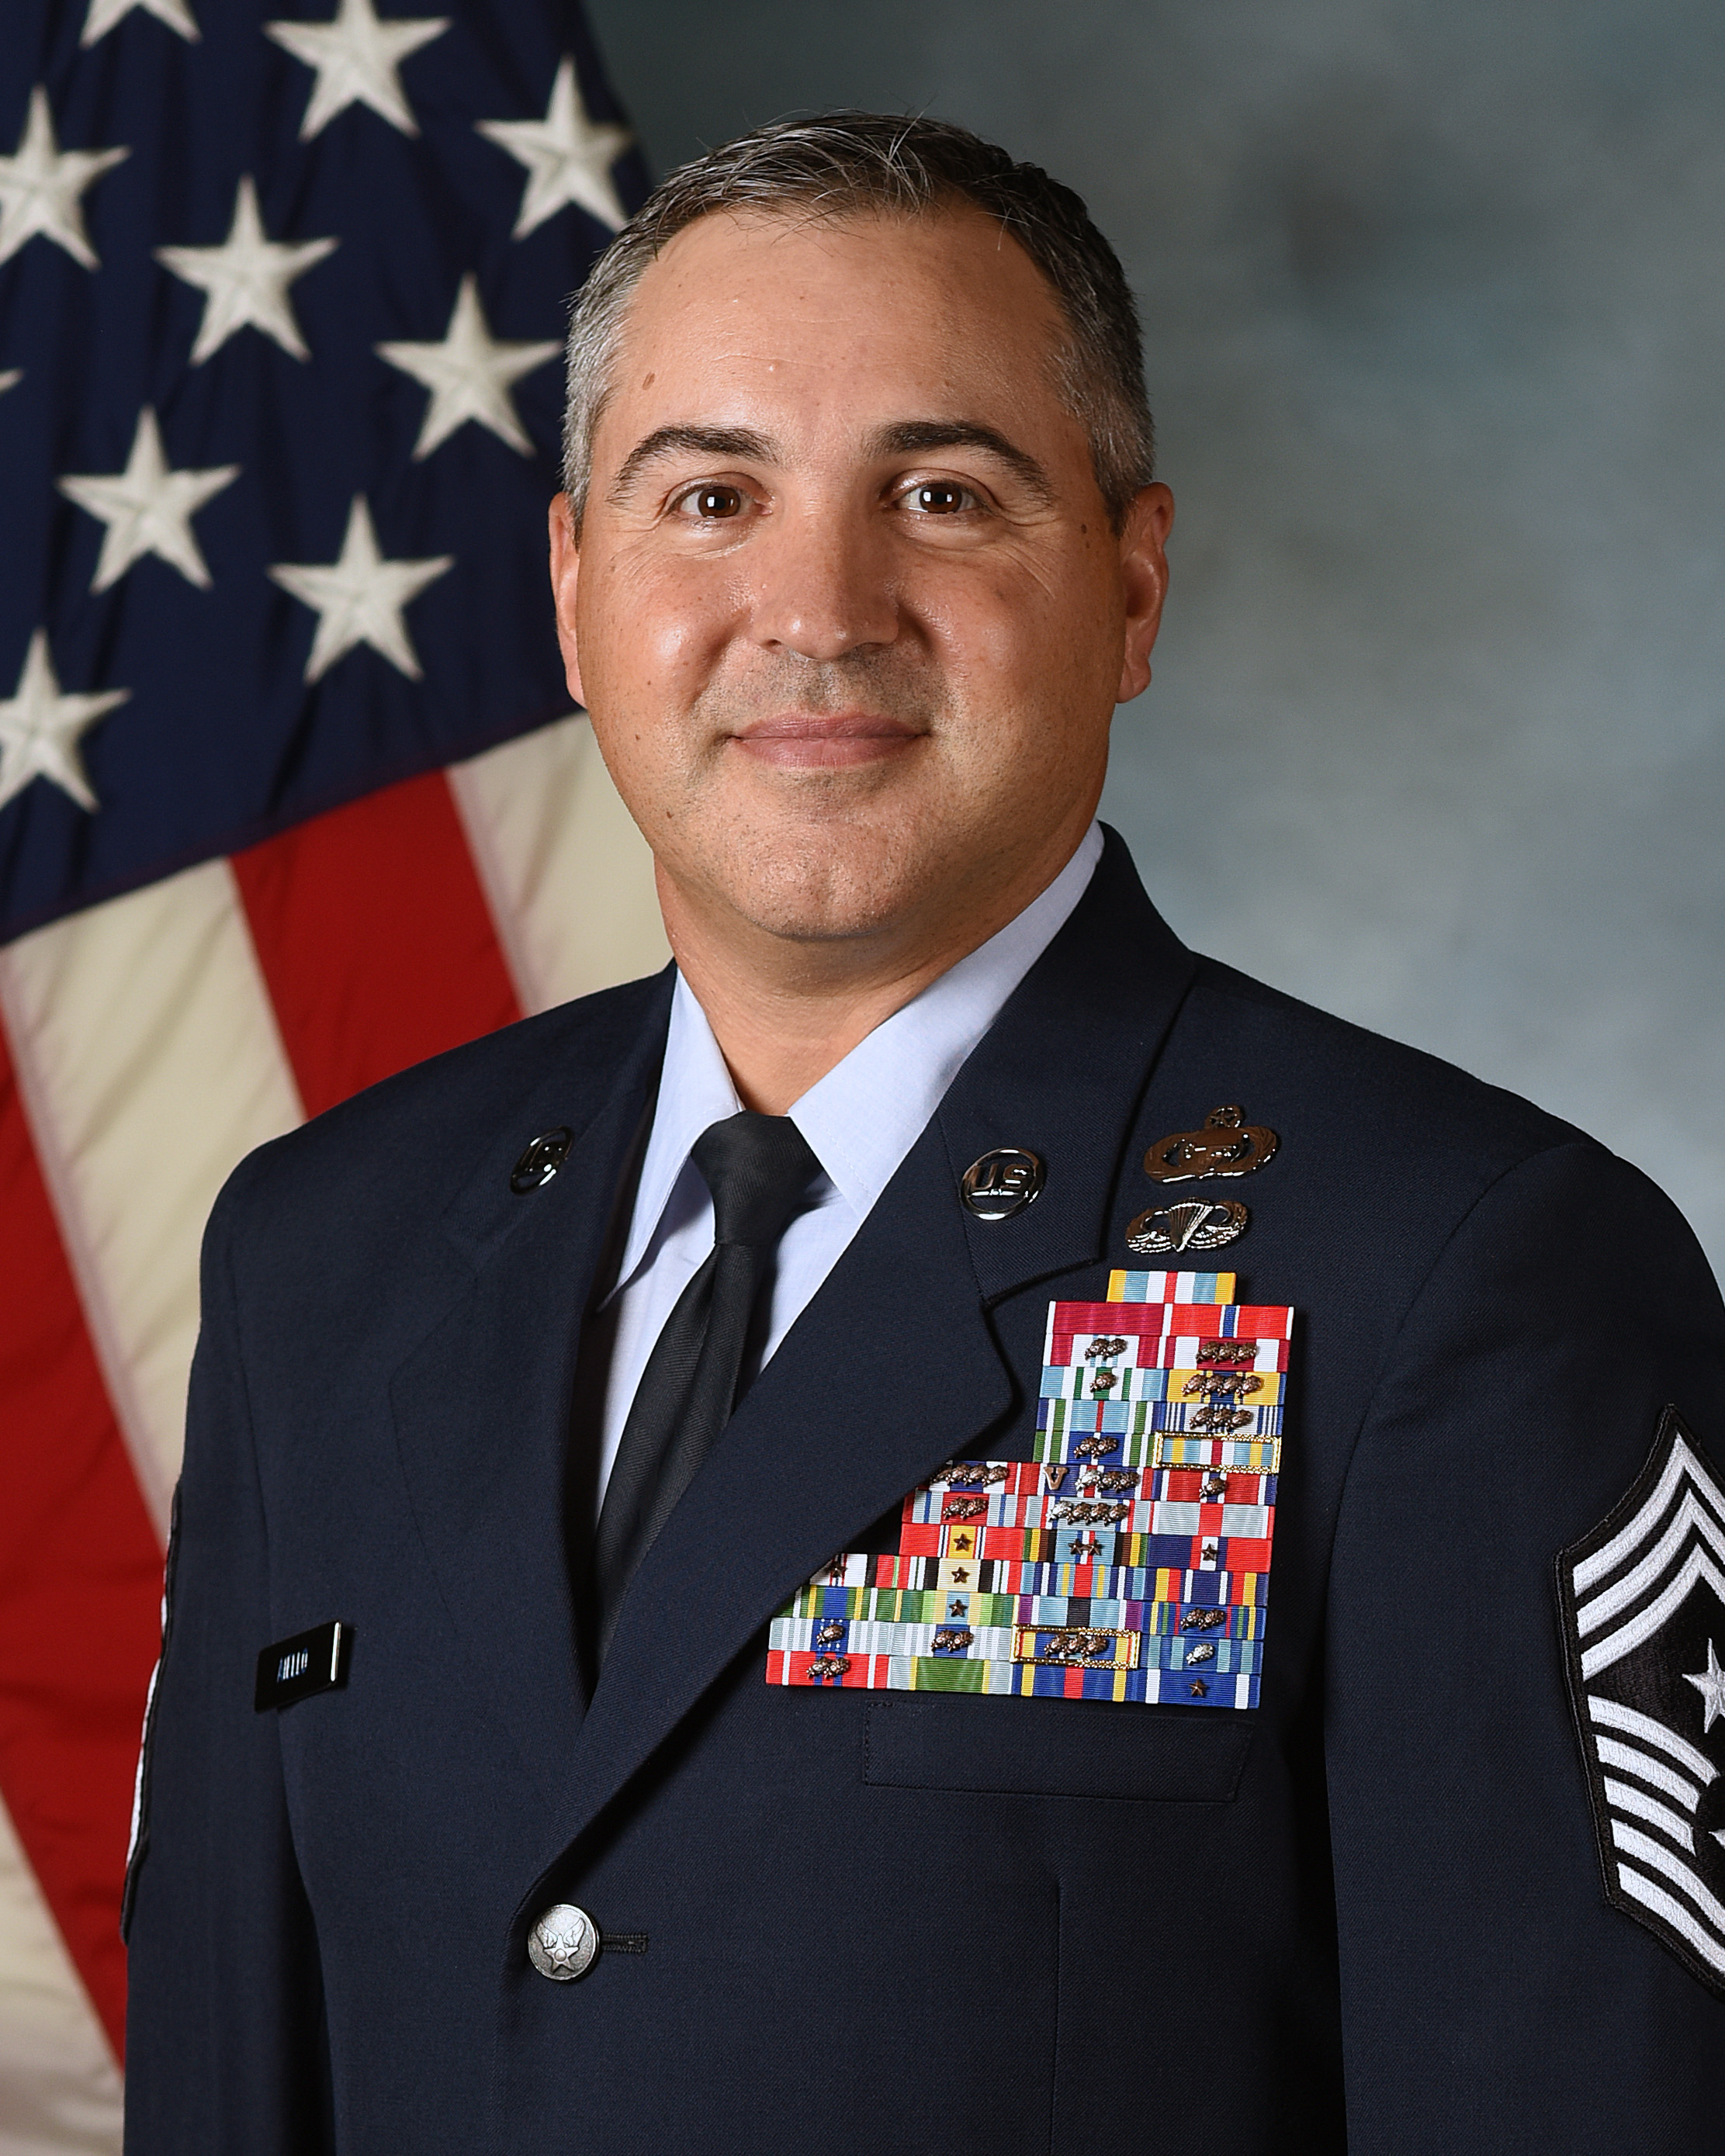 Command Chief Master Sgt. Shawn Aiello